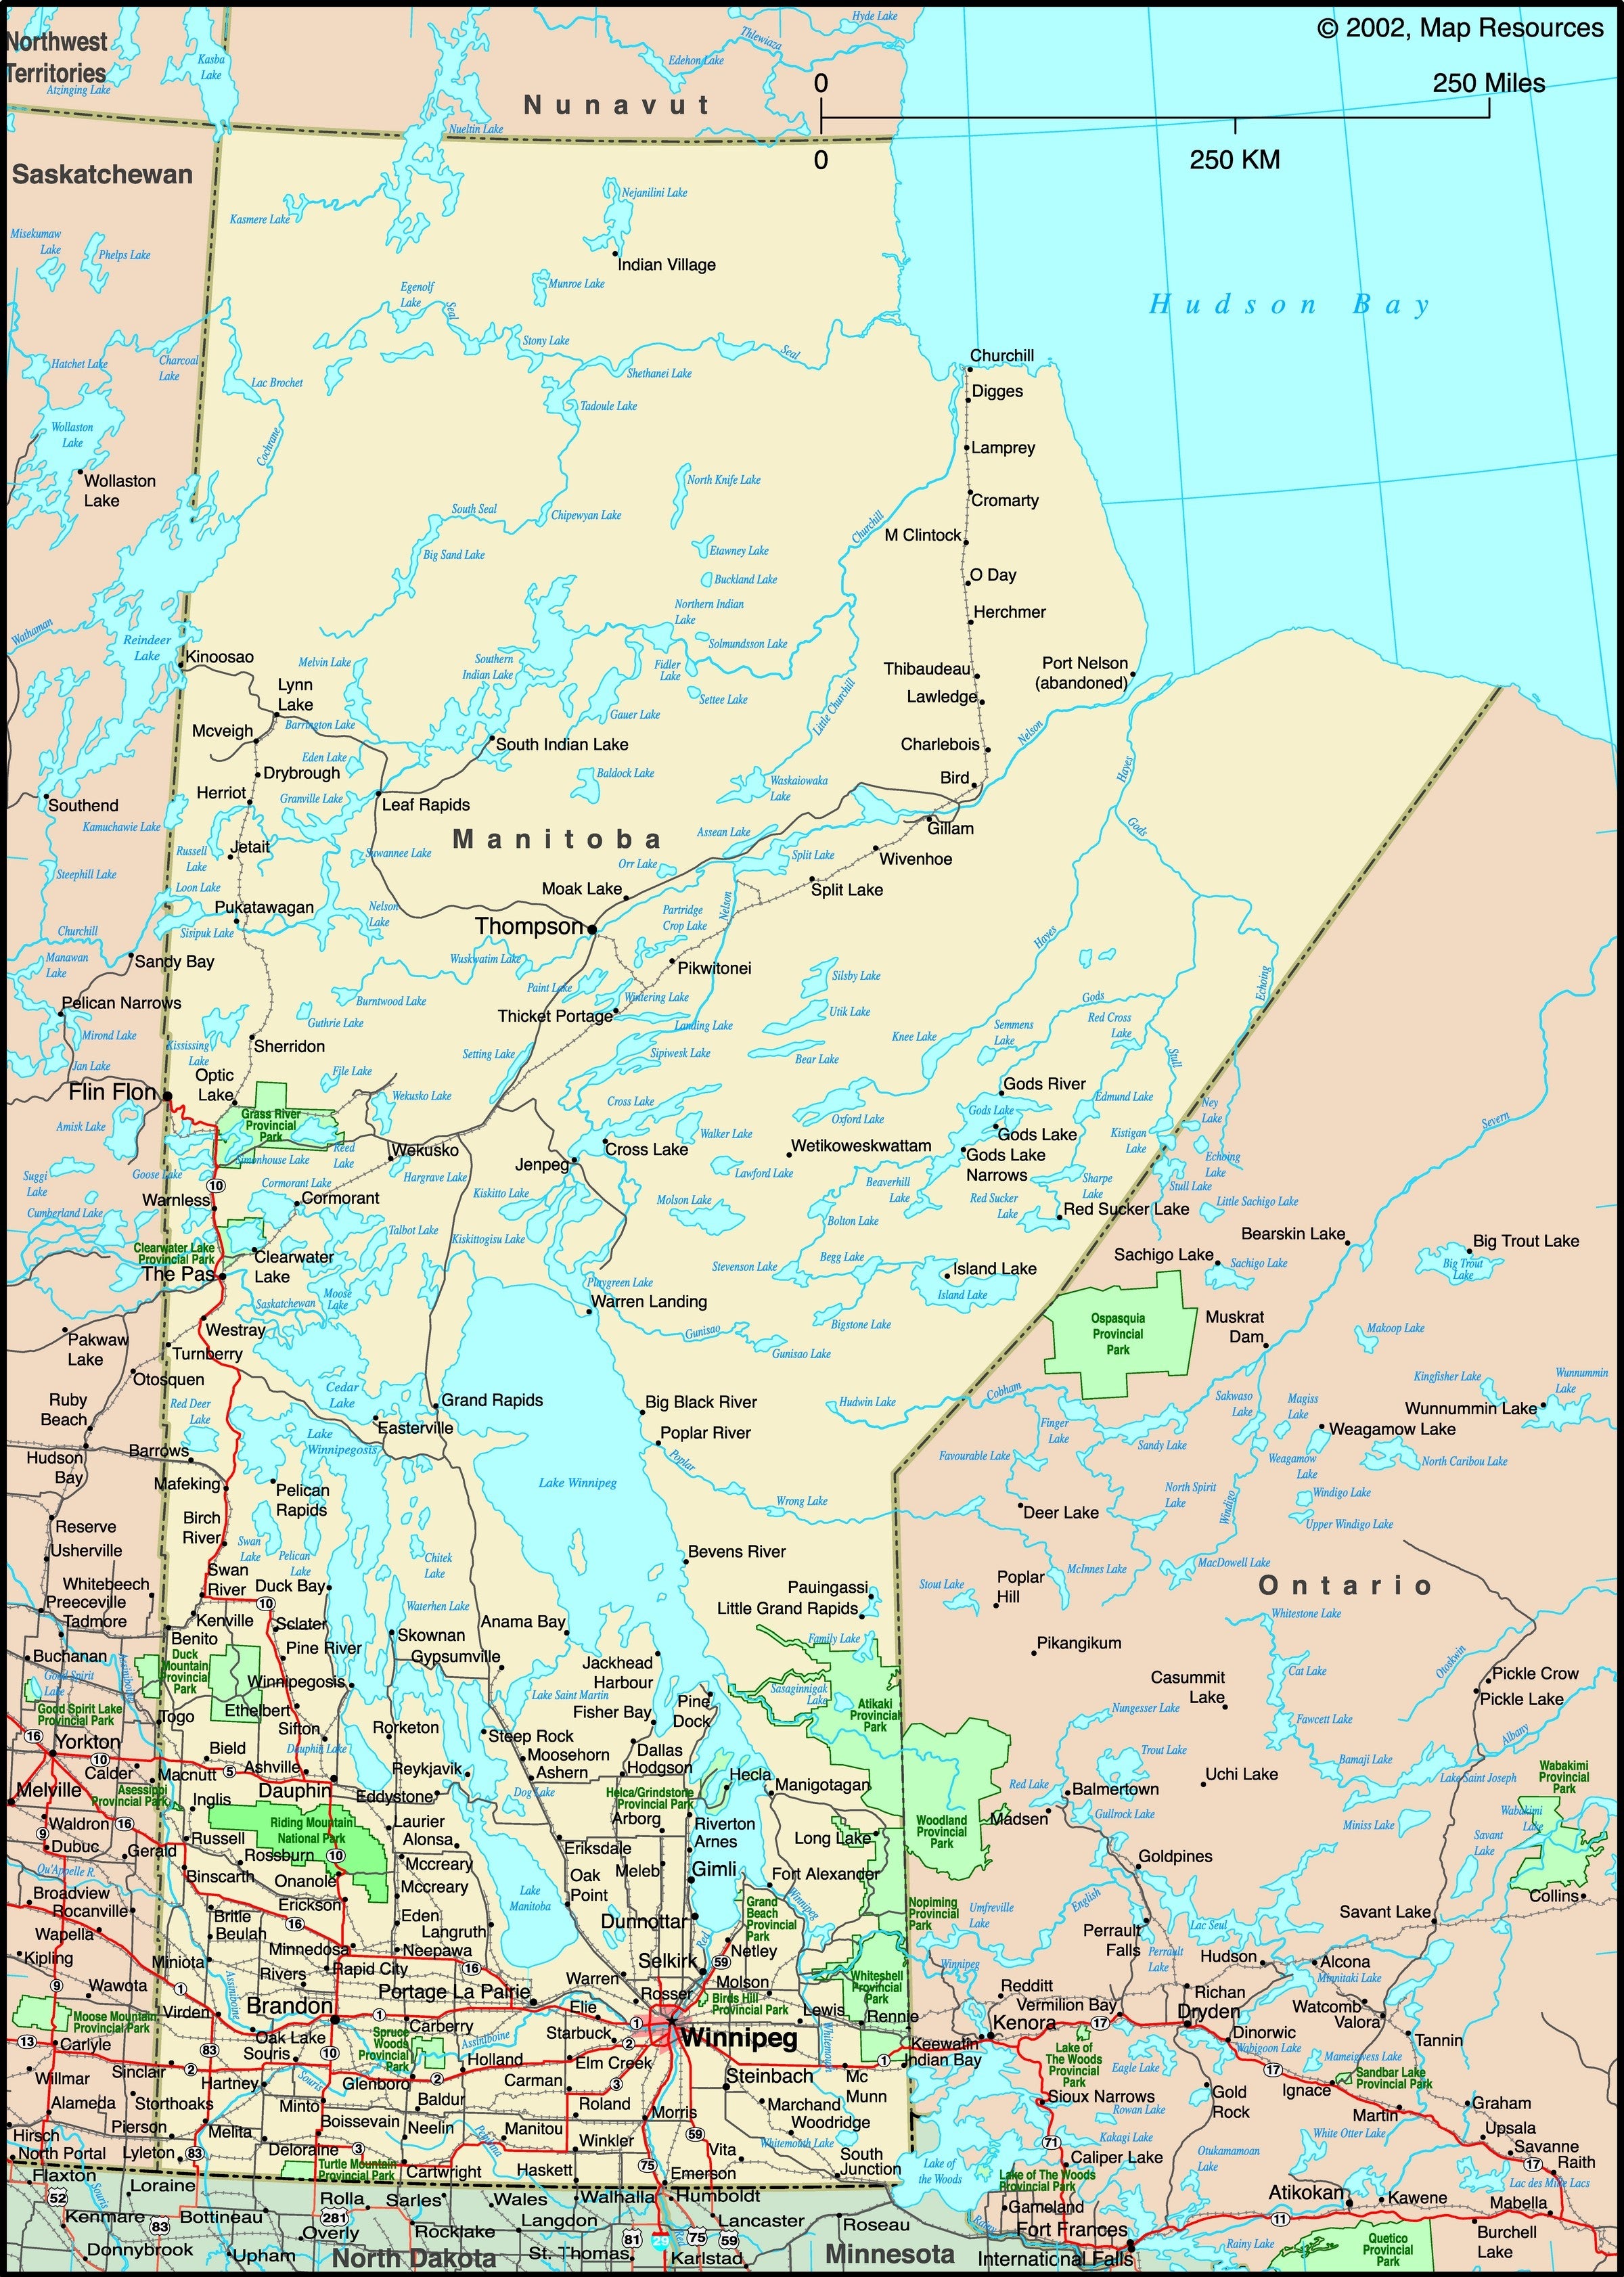 Manitoba, Canada Political Wall Map | Maps.com.com